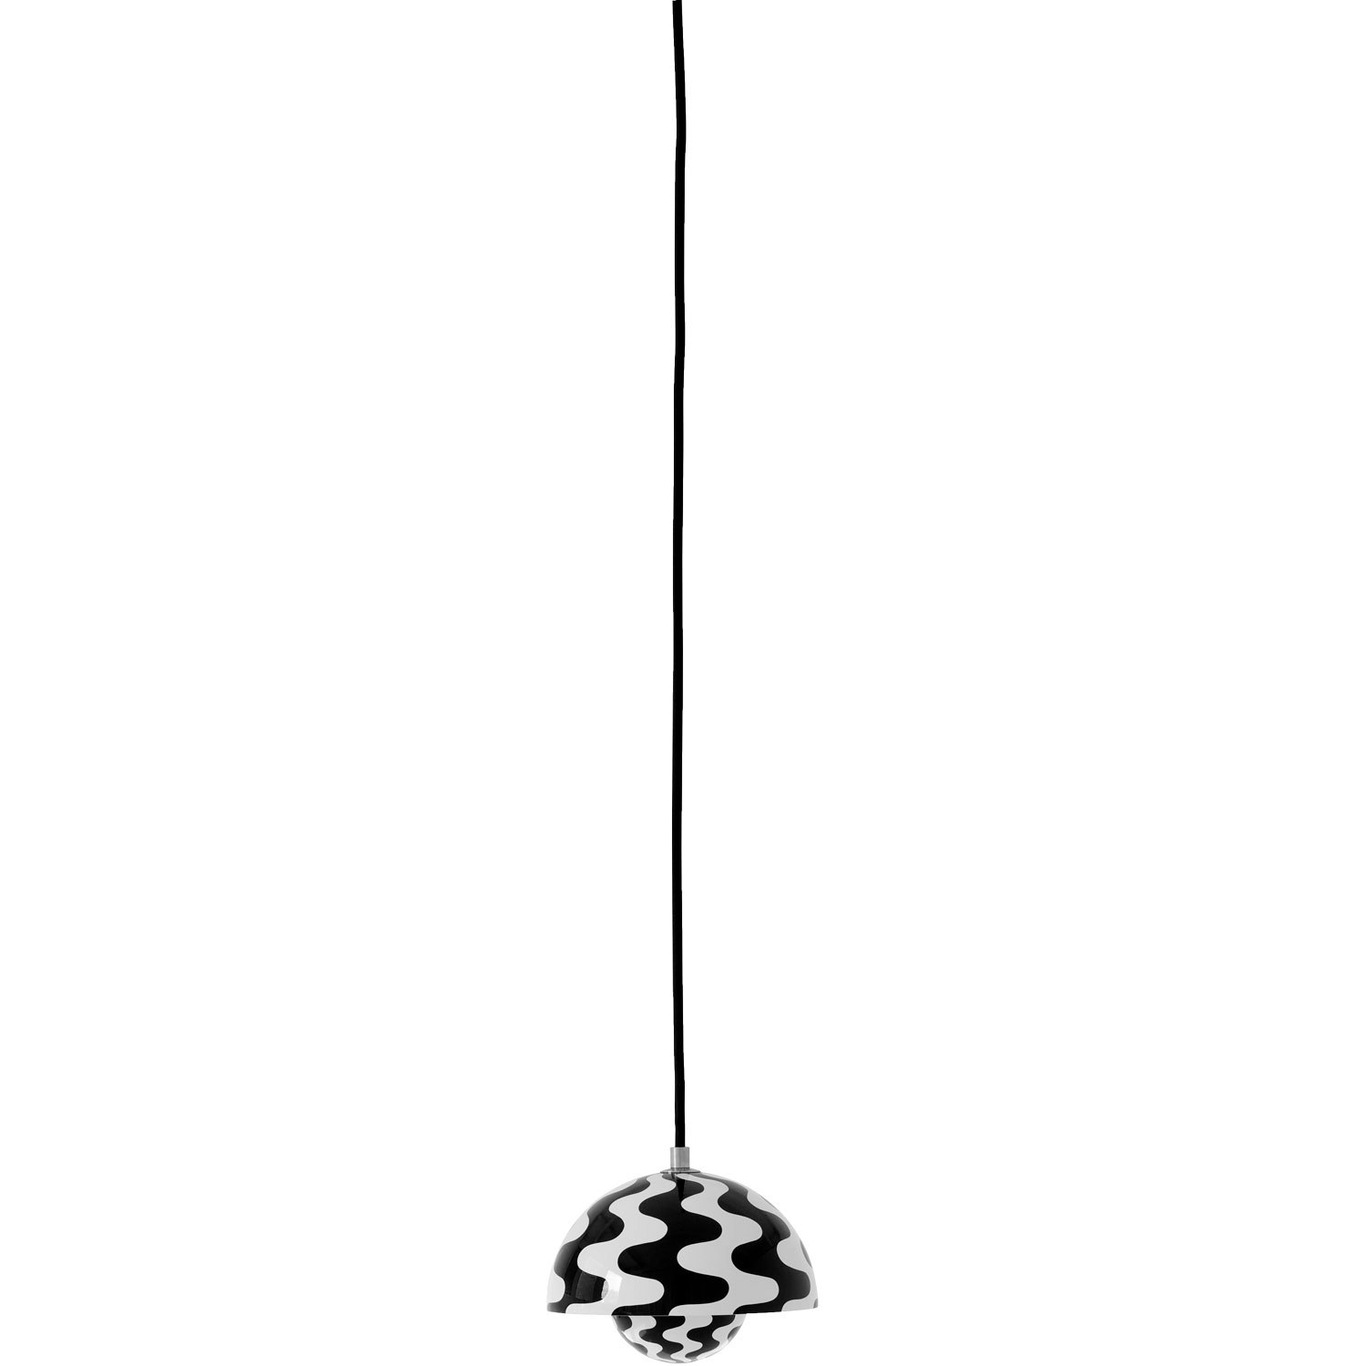 Flowerpot VP10 Pendant, Black / White